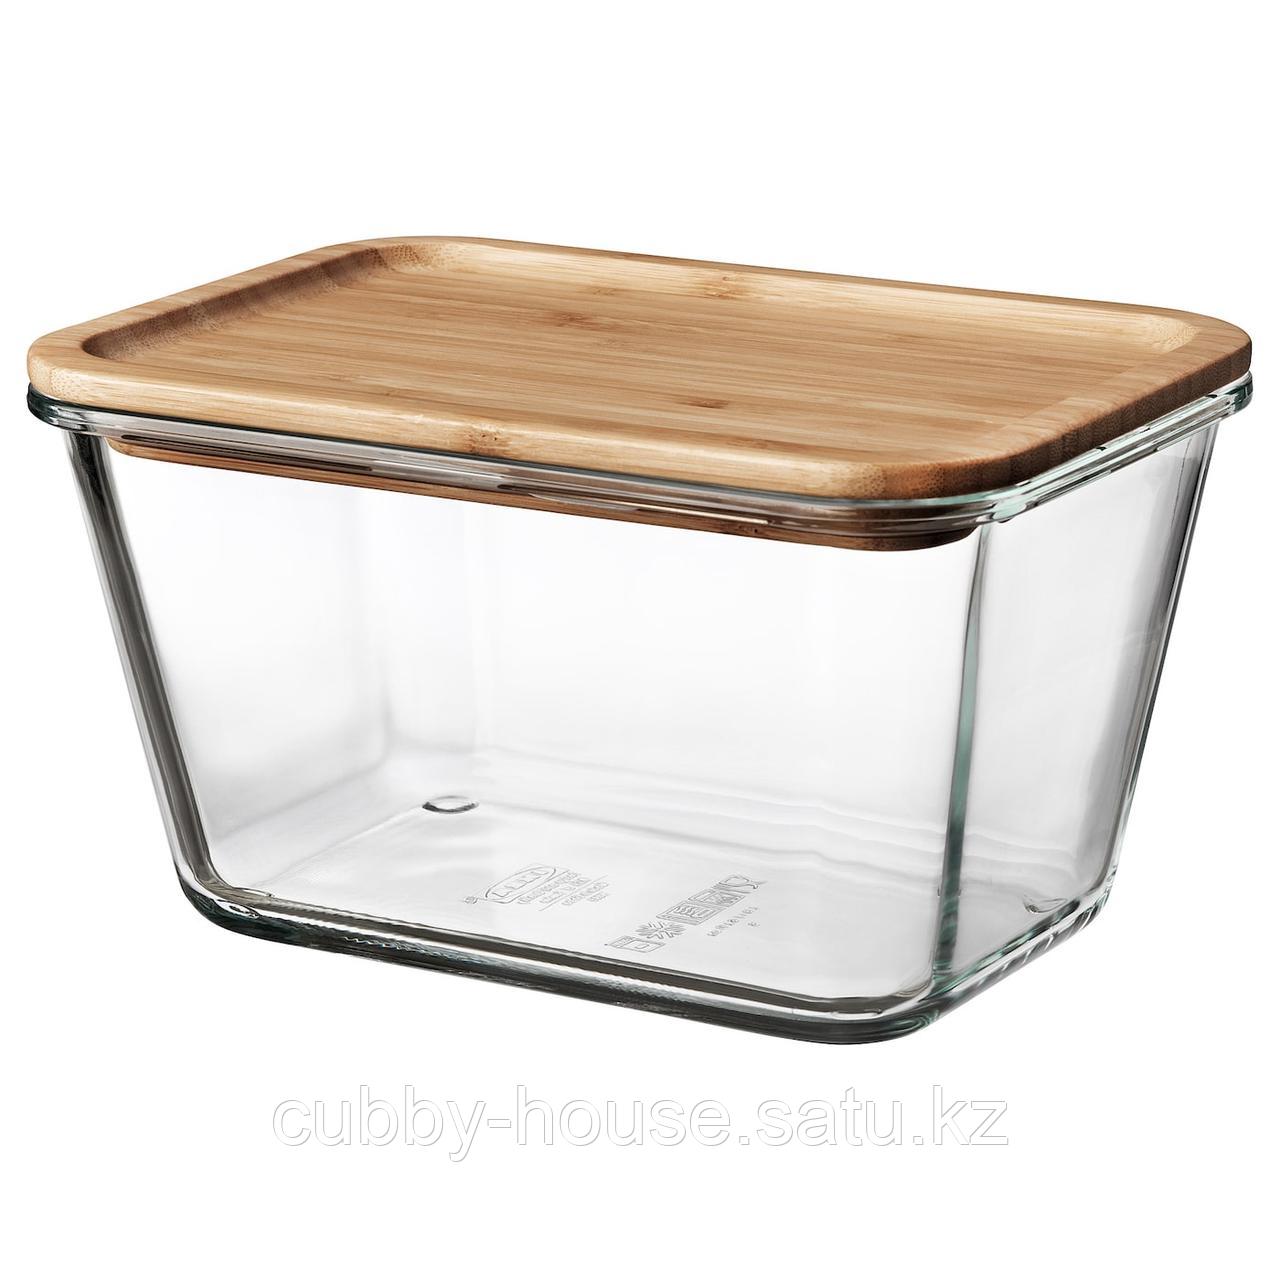 ИКЕА/365+ Контейнер для продуктов с крышкой, прямоугольн формы стекло, стекло бамбук, 1.8 л